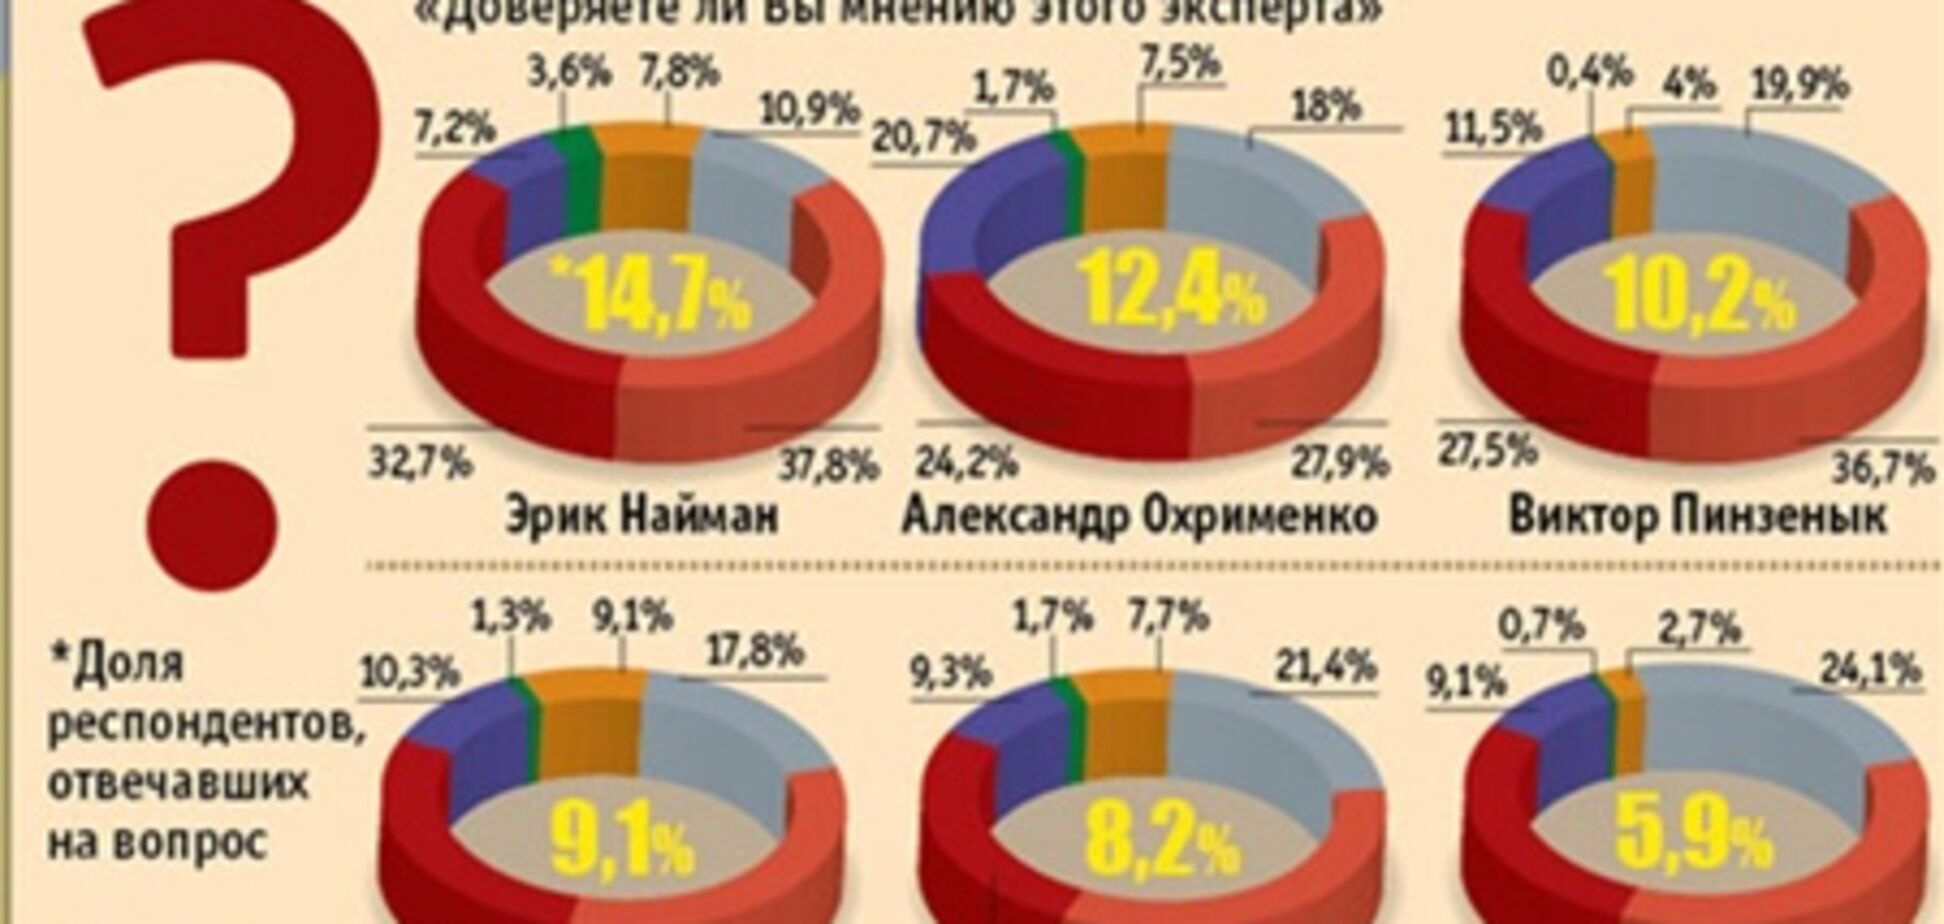 Украинцы следят за новостями финансового рынка, но не доверяют экспертам